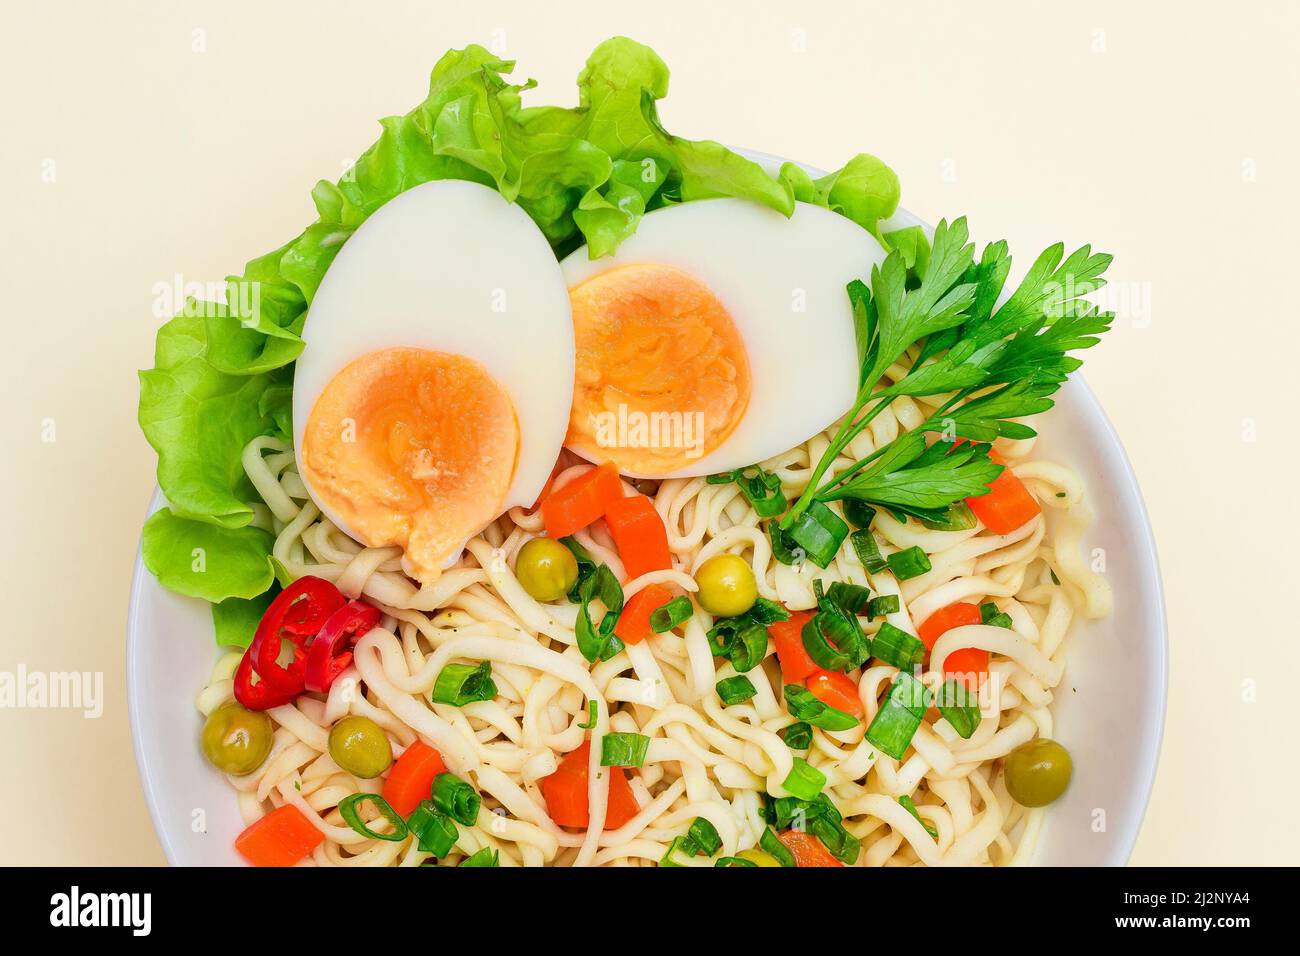 Bella pasta con piselli verdi, carota, uova, peperoncino rosso e verdi su sfondo bianco. Tagliatelle istantanee con verdure Foto Stock